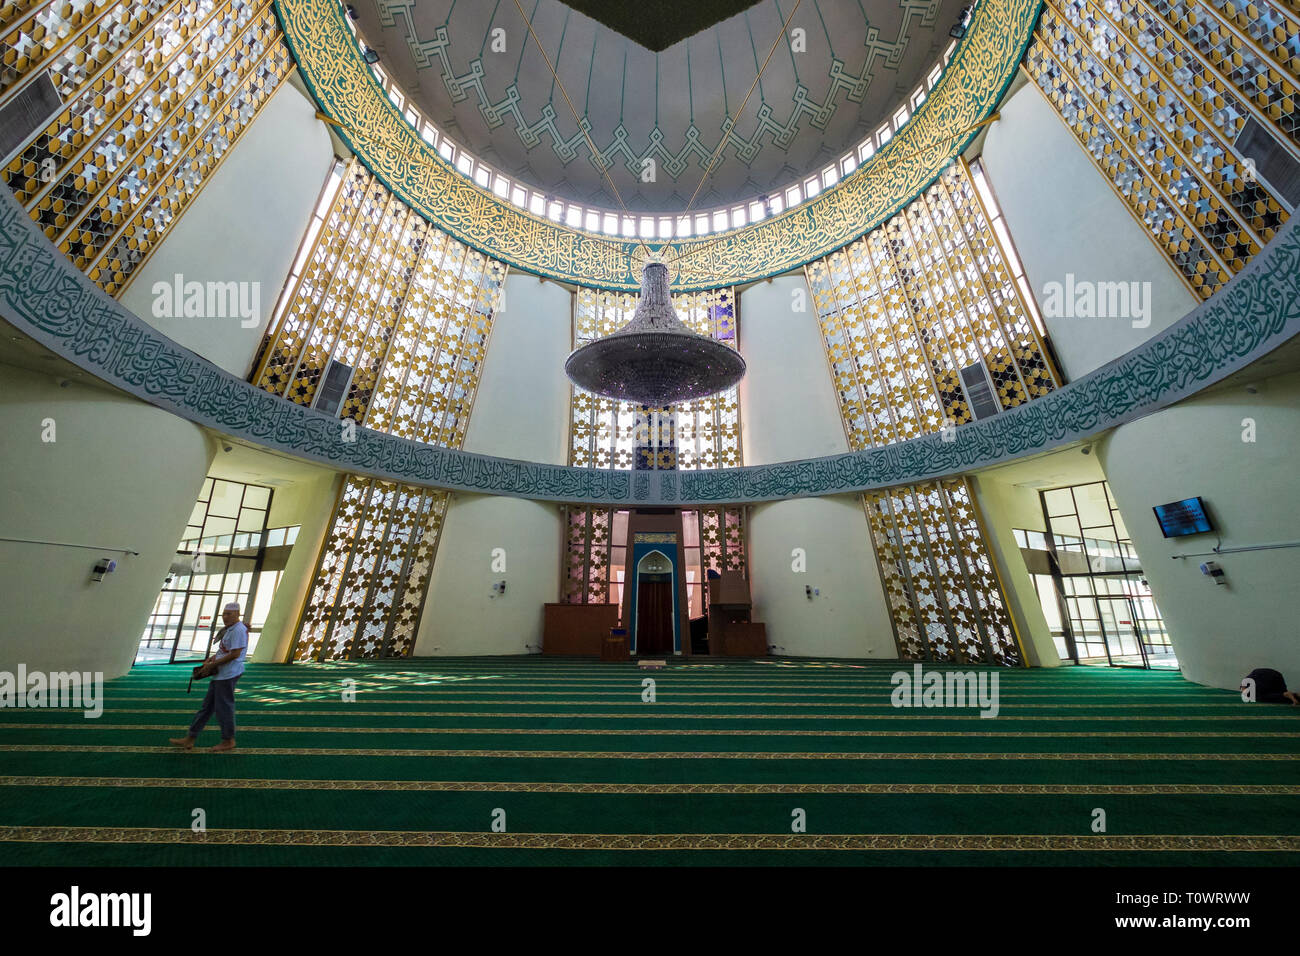 Die Sabah Staats Moschee in Kota Kinabalu, Sabah, Borneo, Malaysia. Innenansicht des großen, runden Raum. Stockfoto